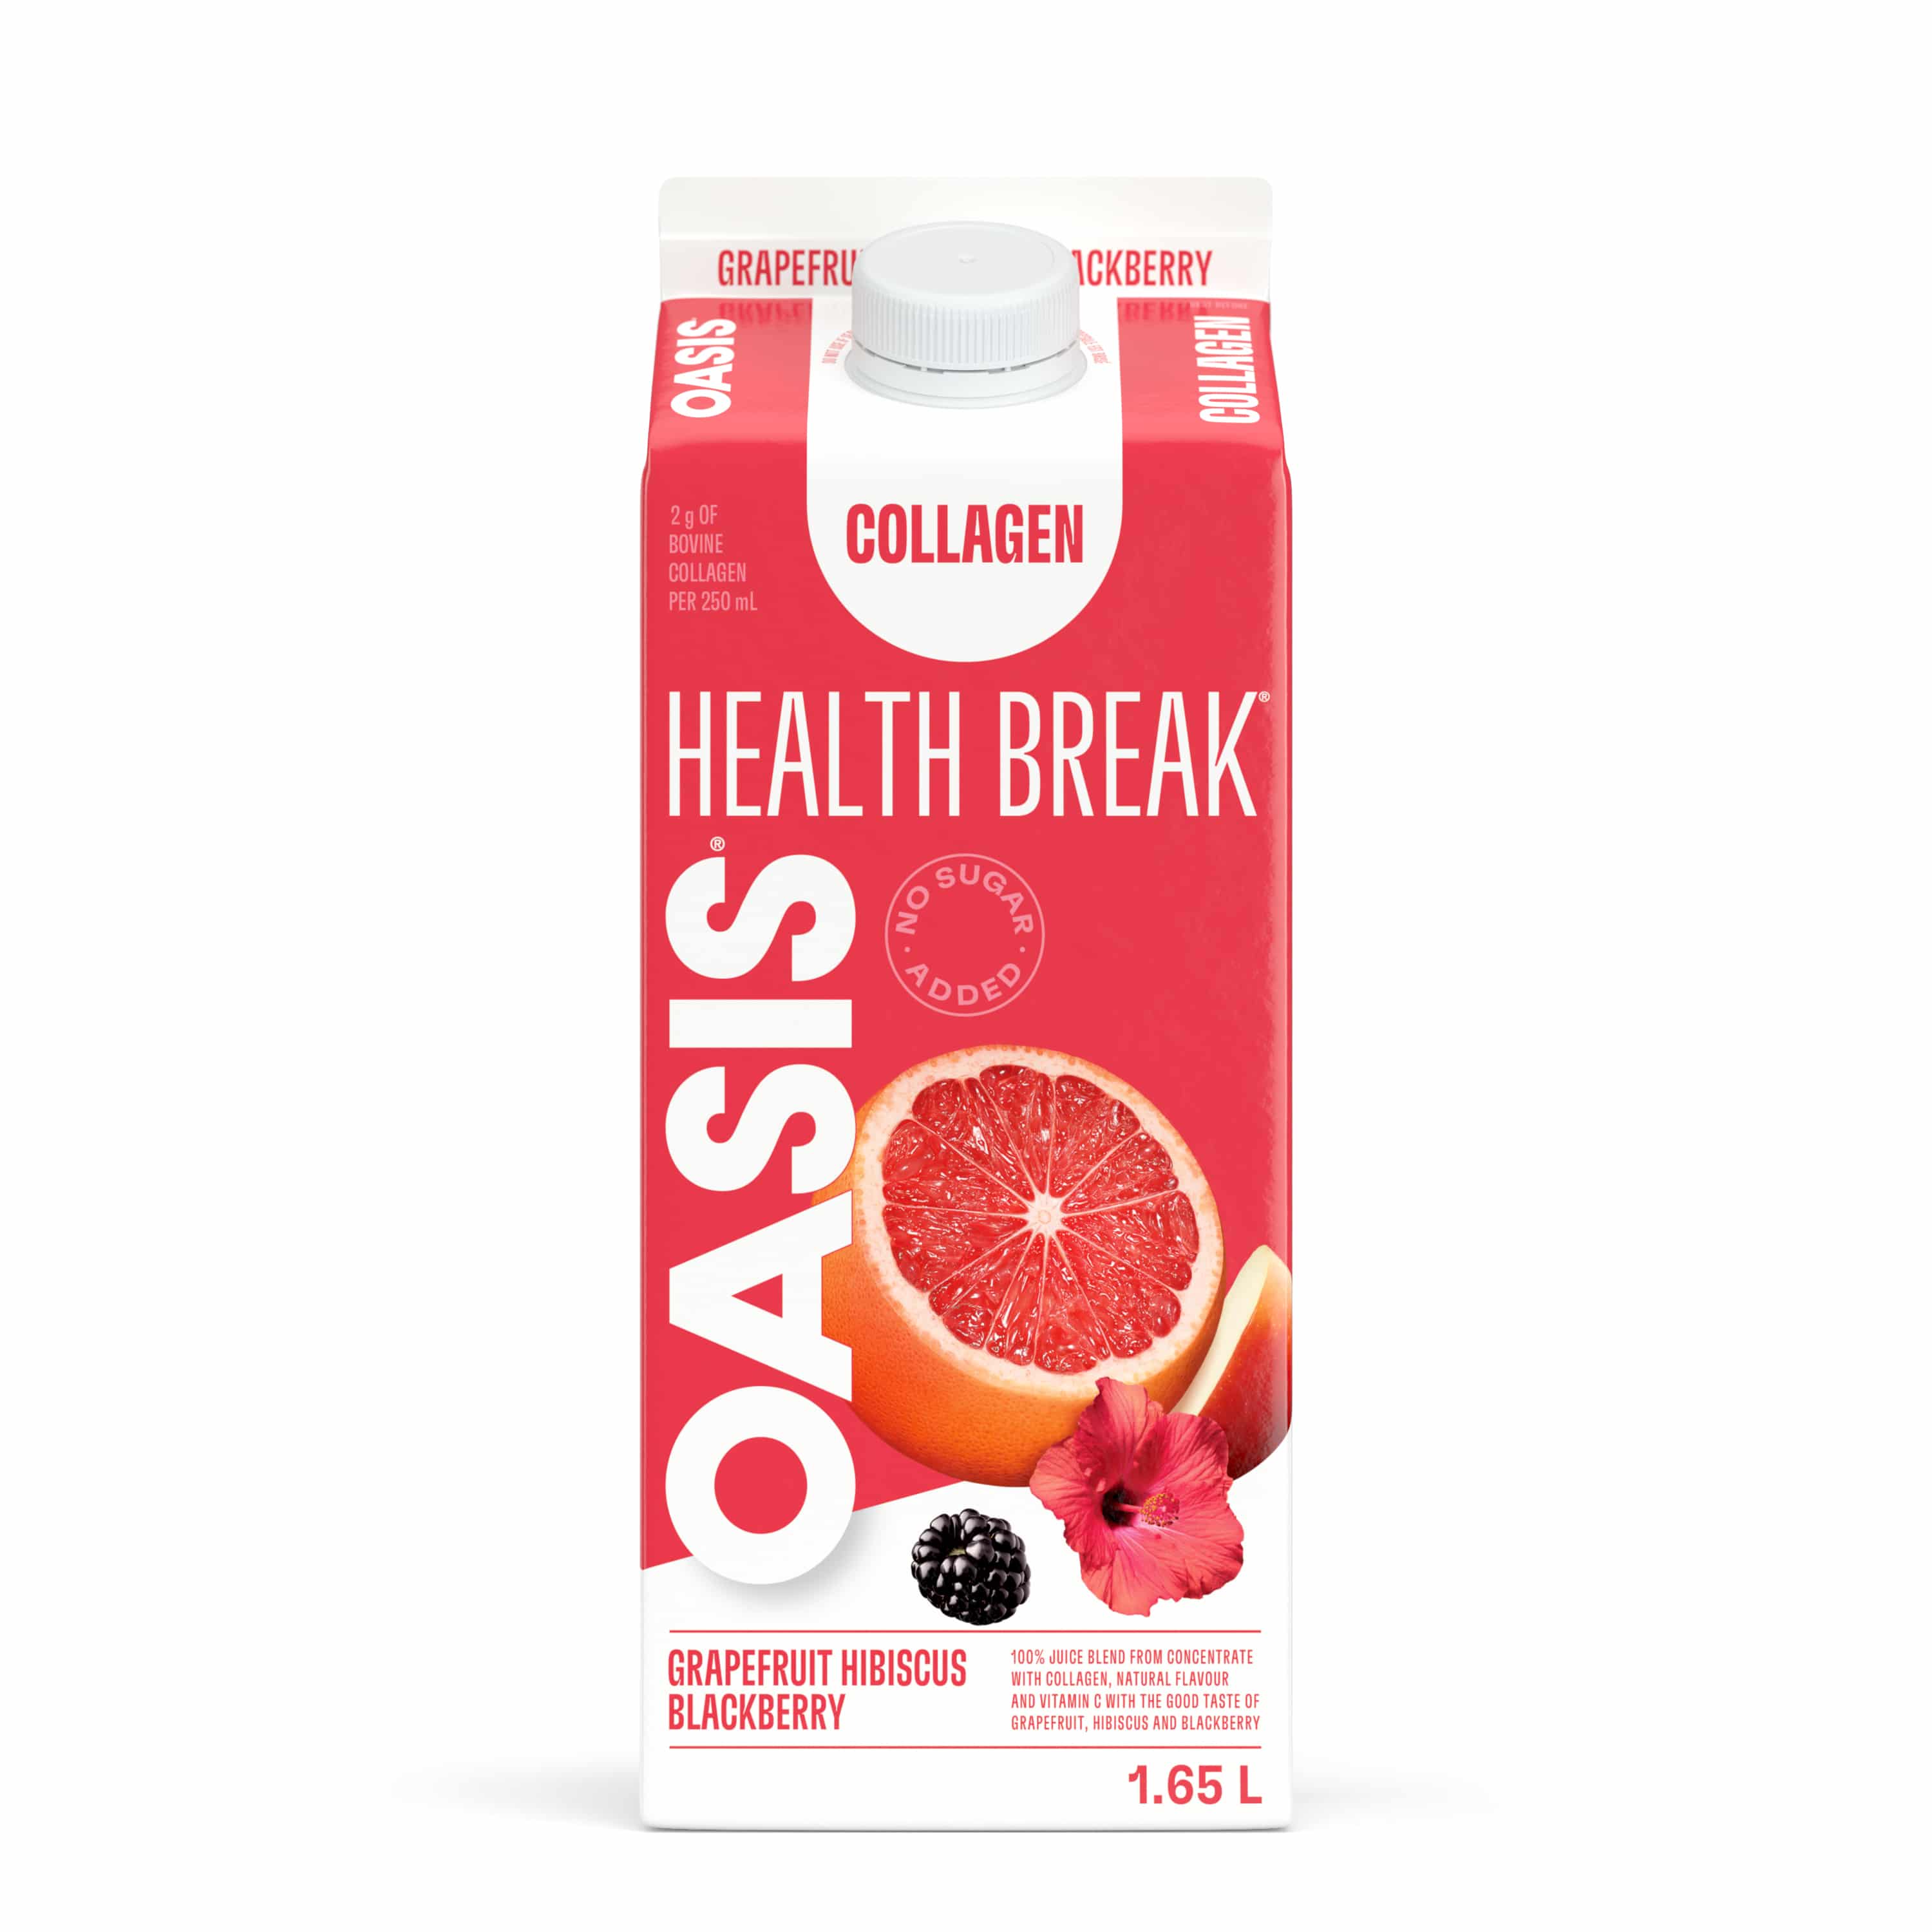 OASIS HEALTH BREAK GRAPEFRUIT/HIBISCUS/BLACKBERRY COLLAGEN Gable Rex 1.65L